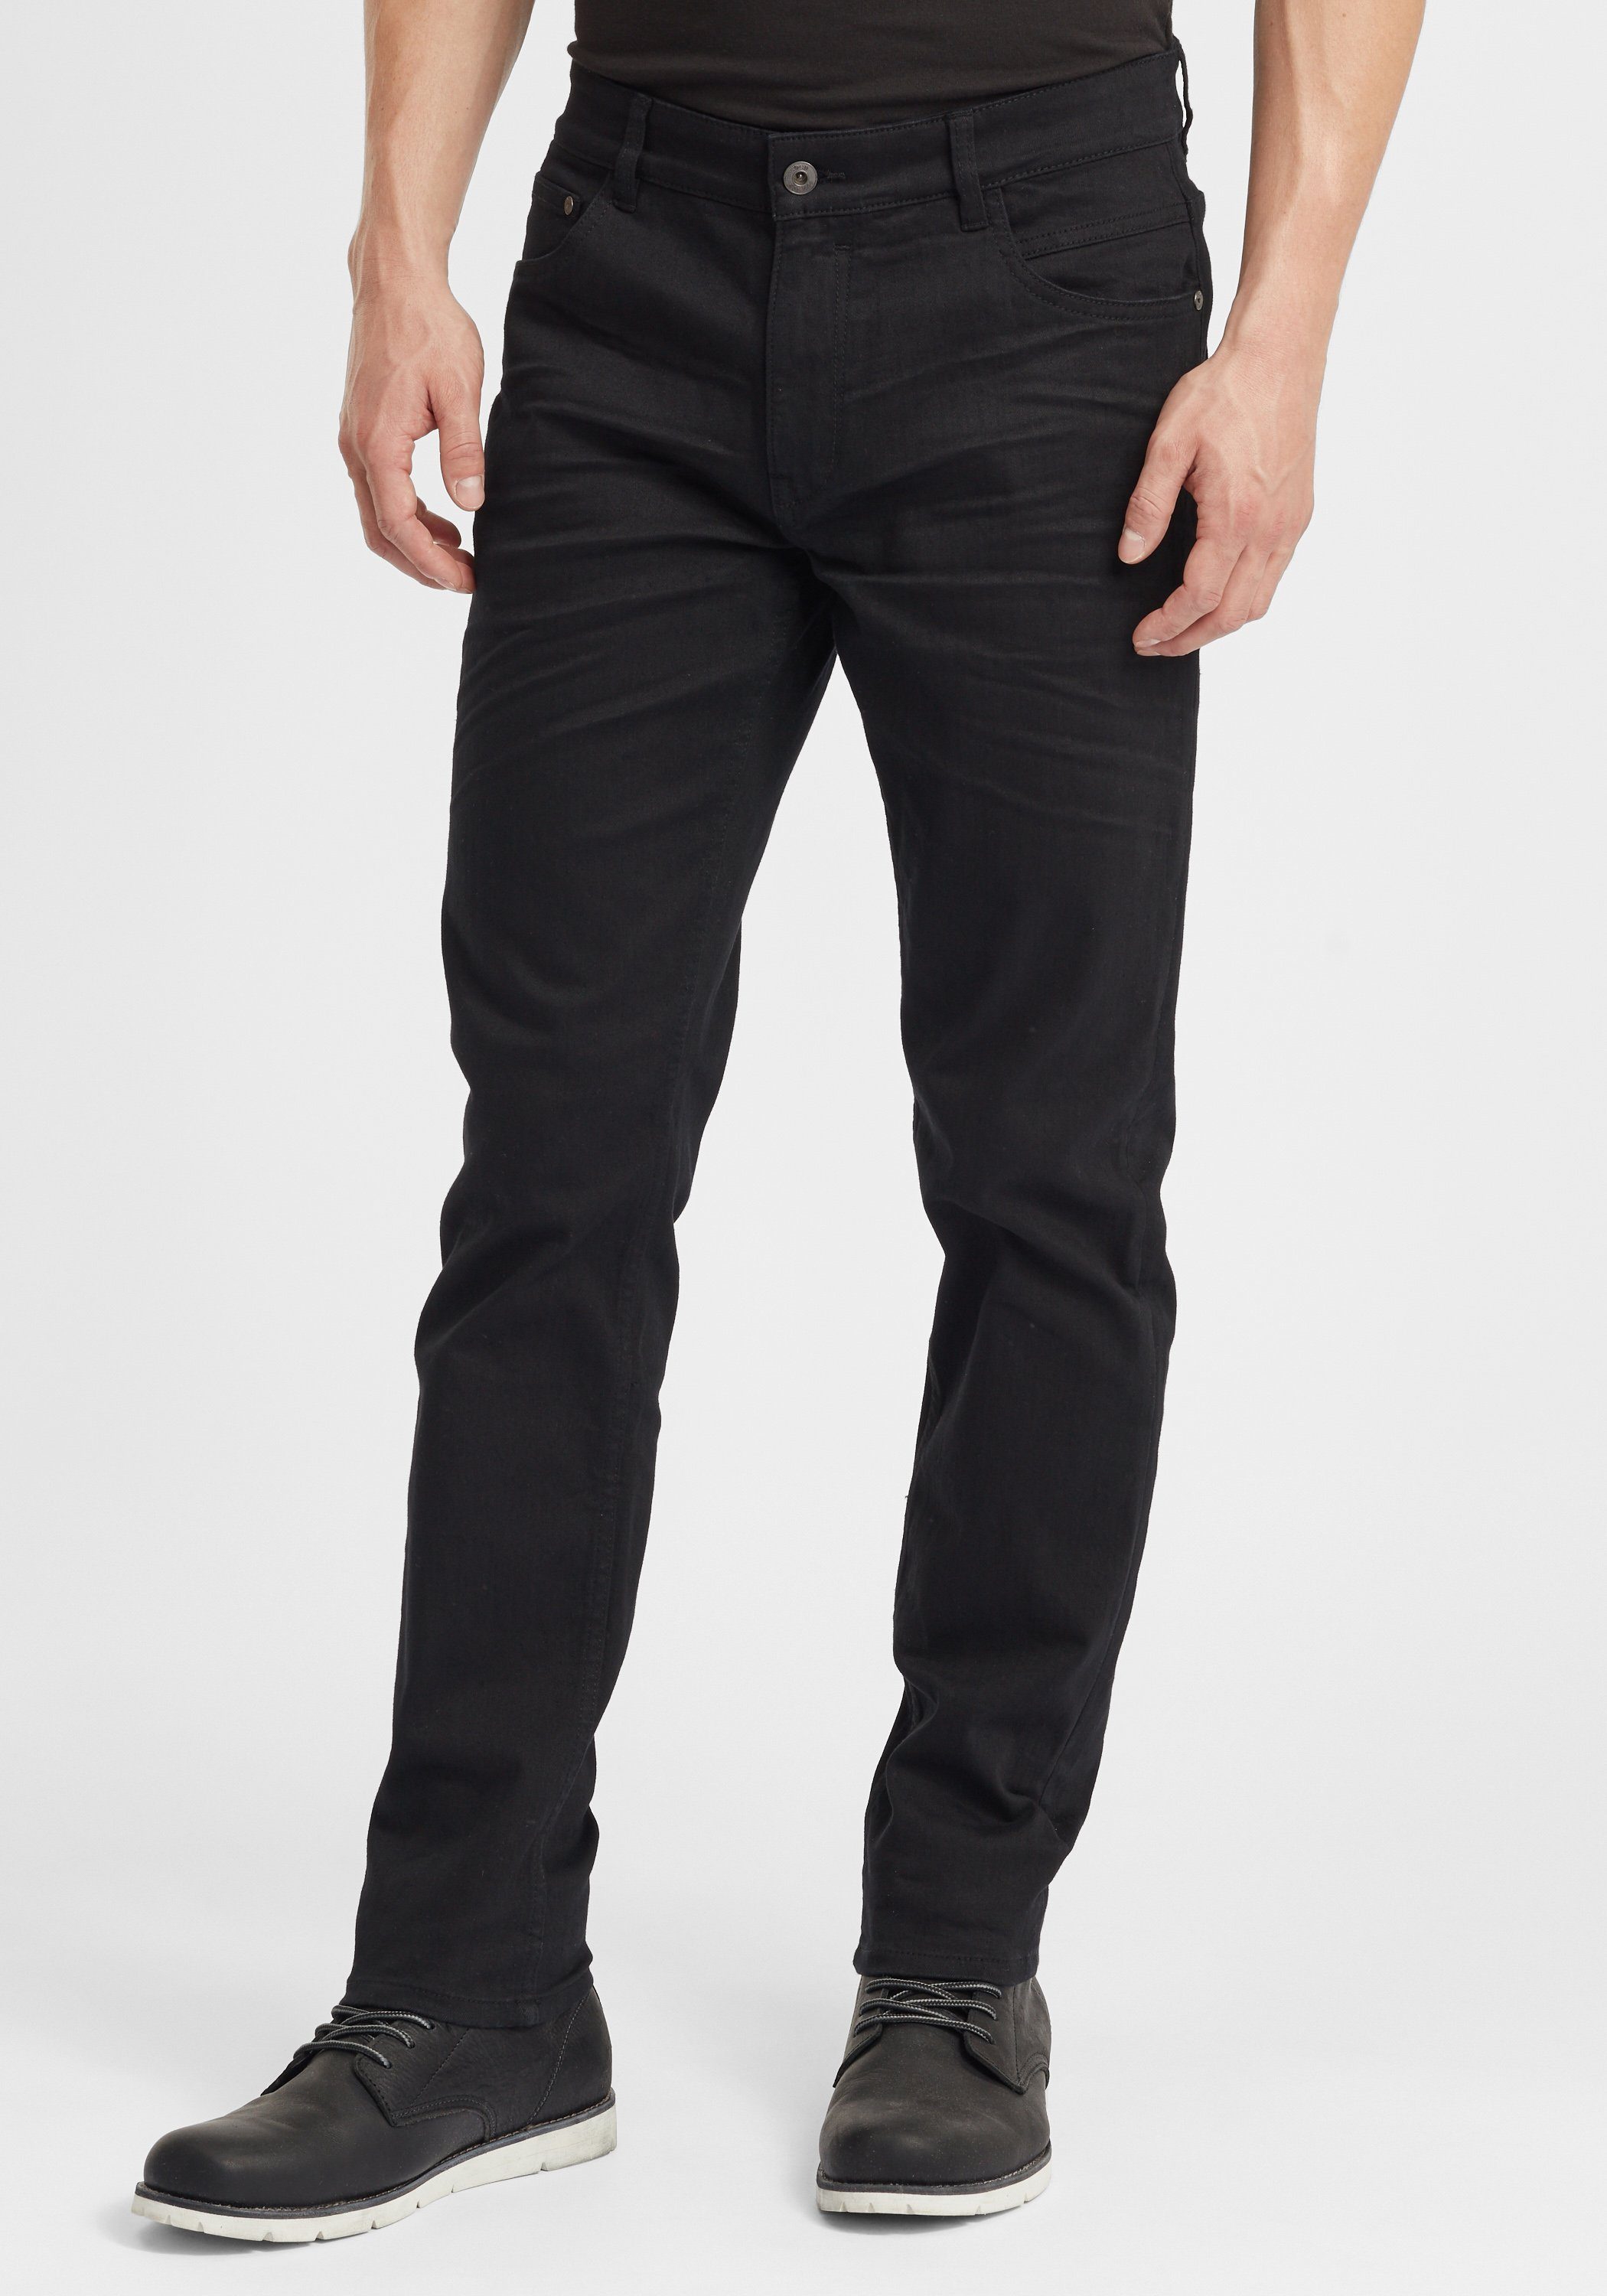 ist eine große Lagerräumung Solid 5-Pocket-Jeans SDFynn Black Denim (700035)